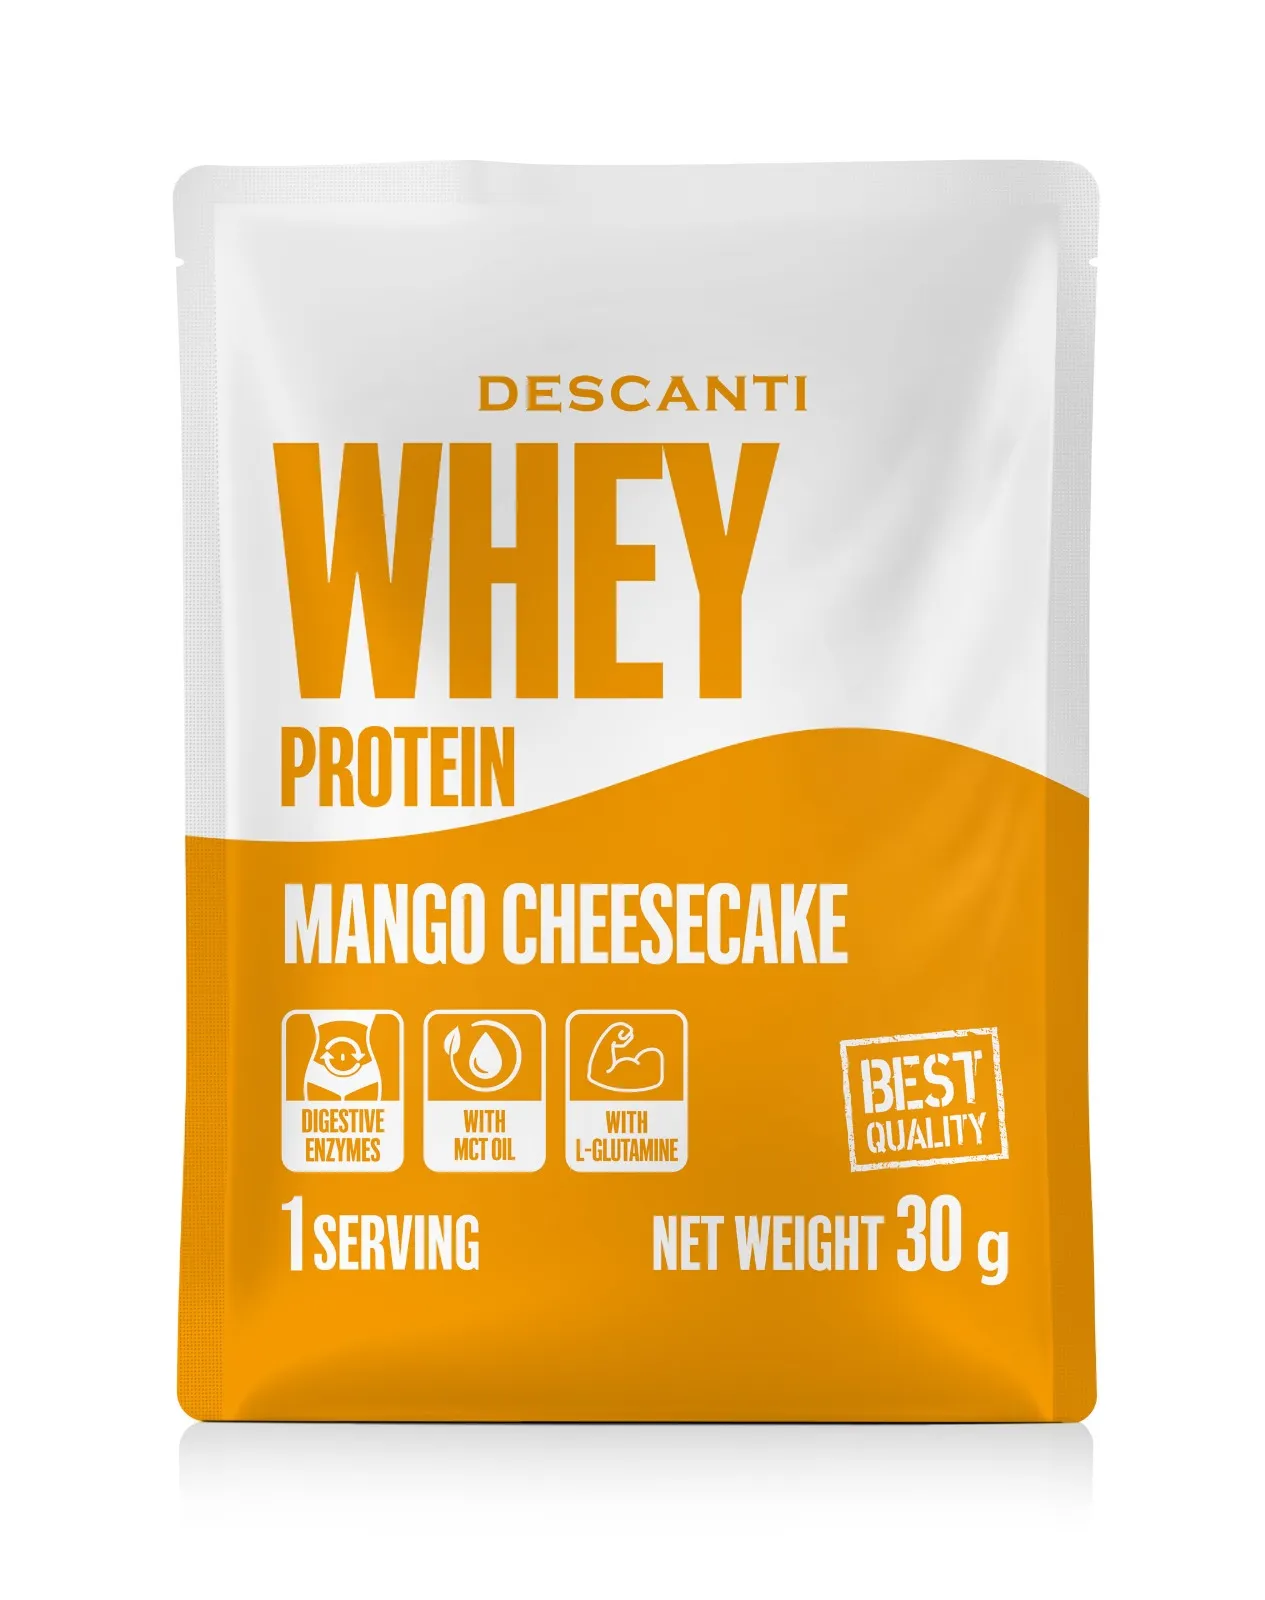 DESCANTI Whey Protein Mango Cheesecake